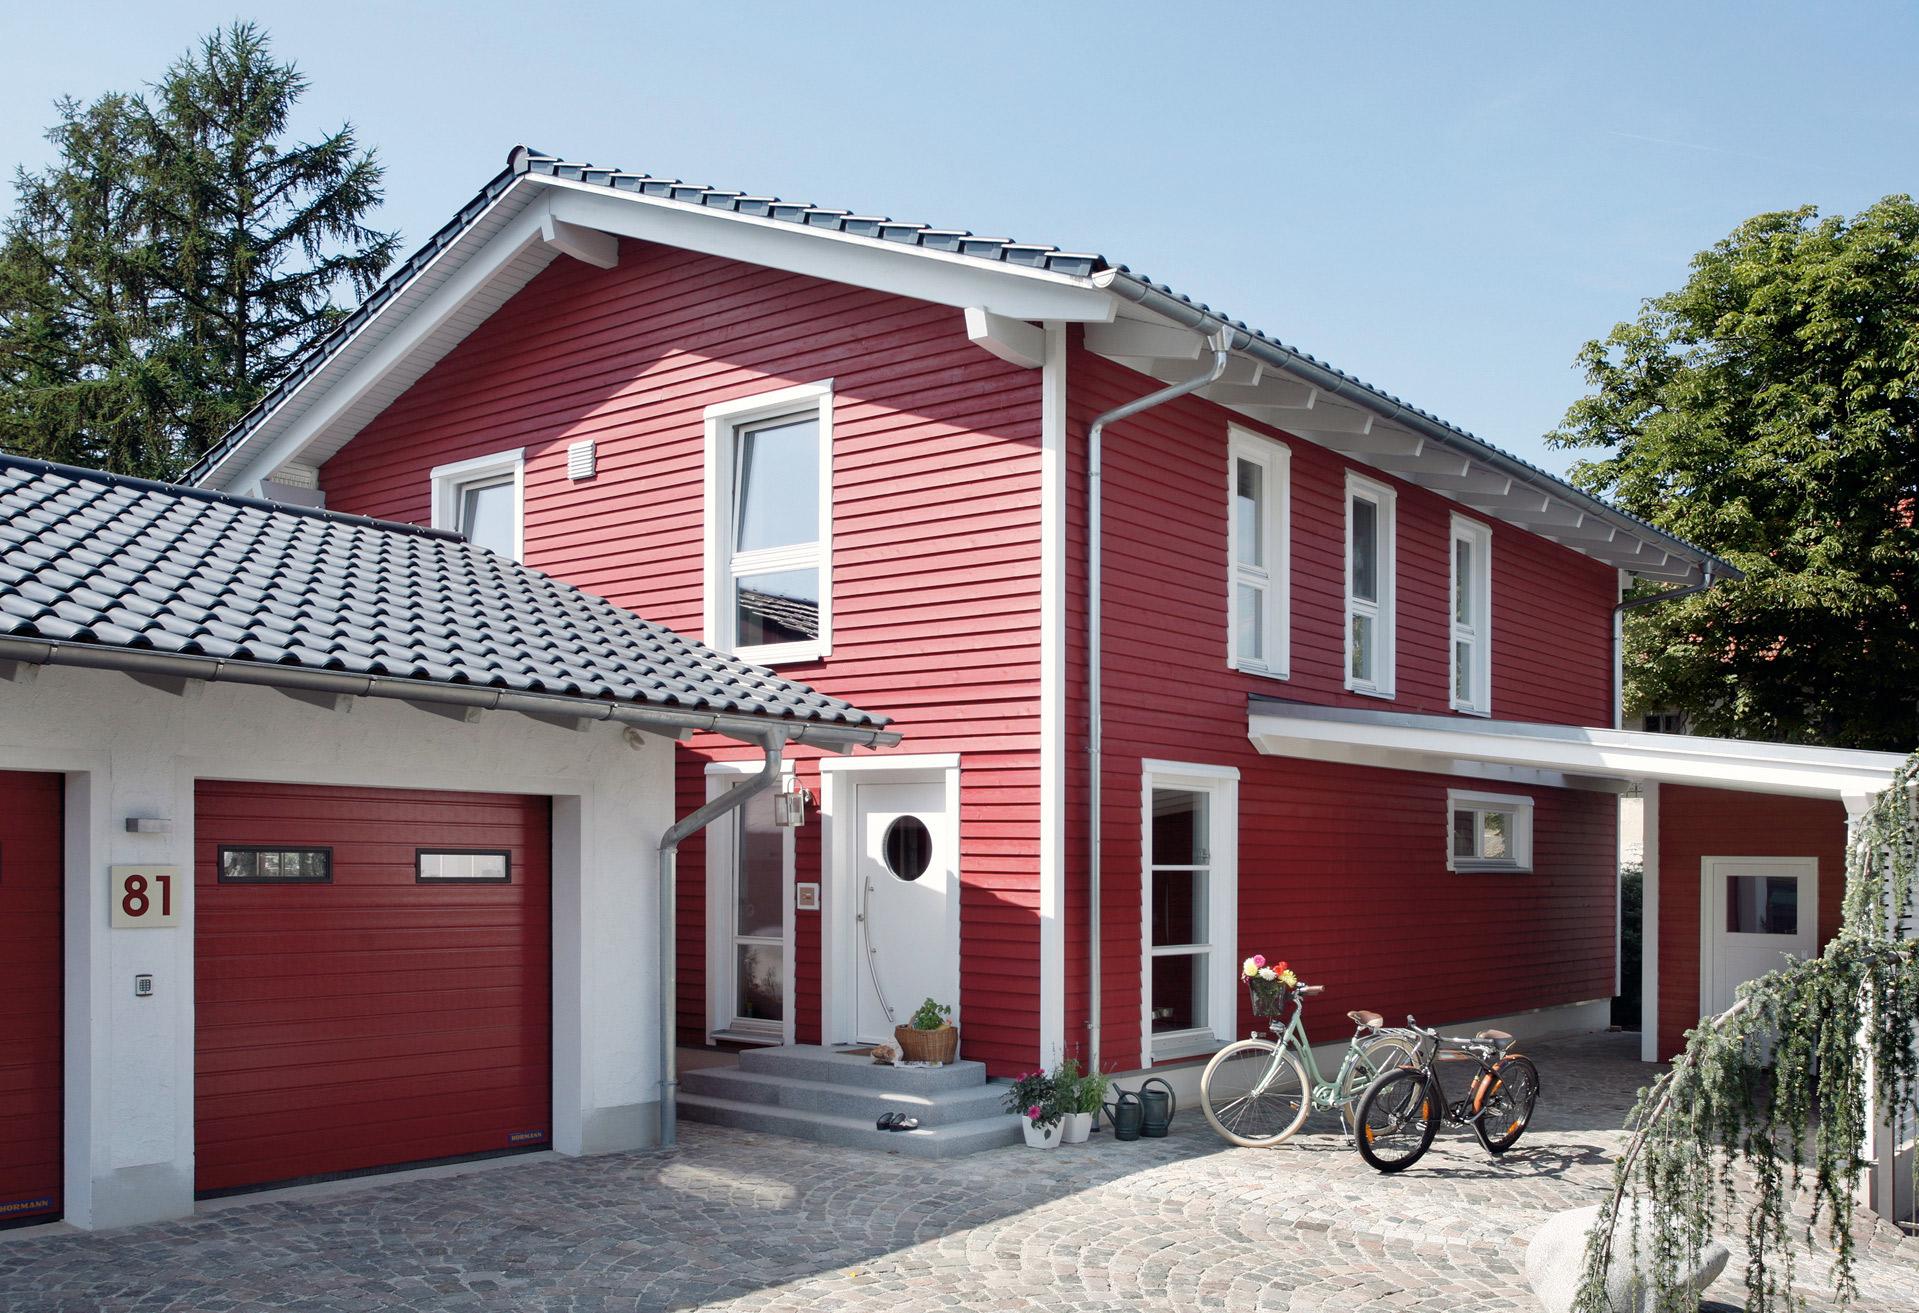 Casa prefabbricata con facciata in legno rosso con doppio garage